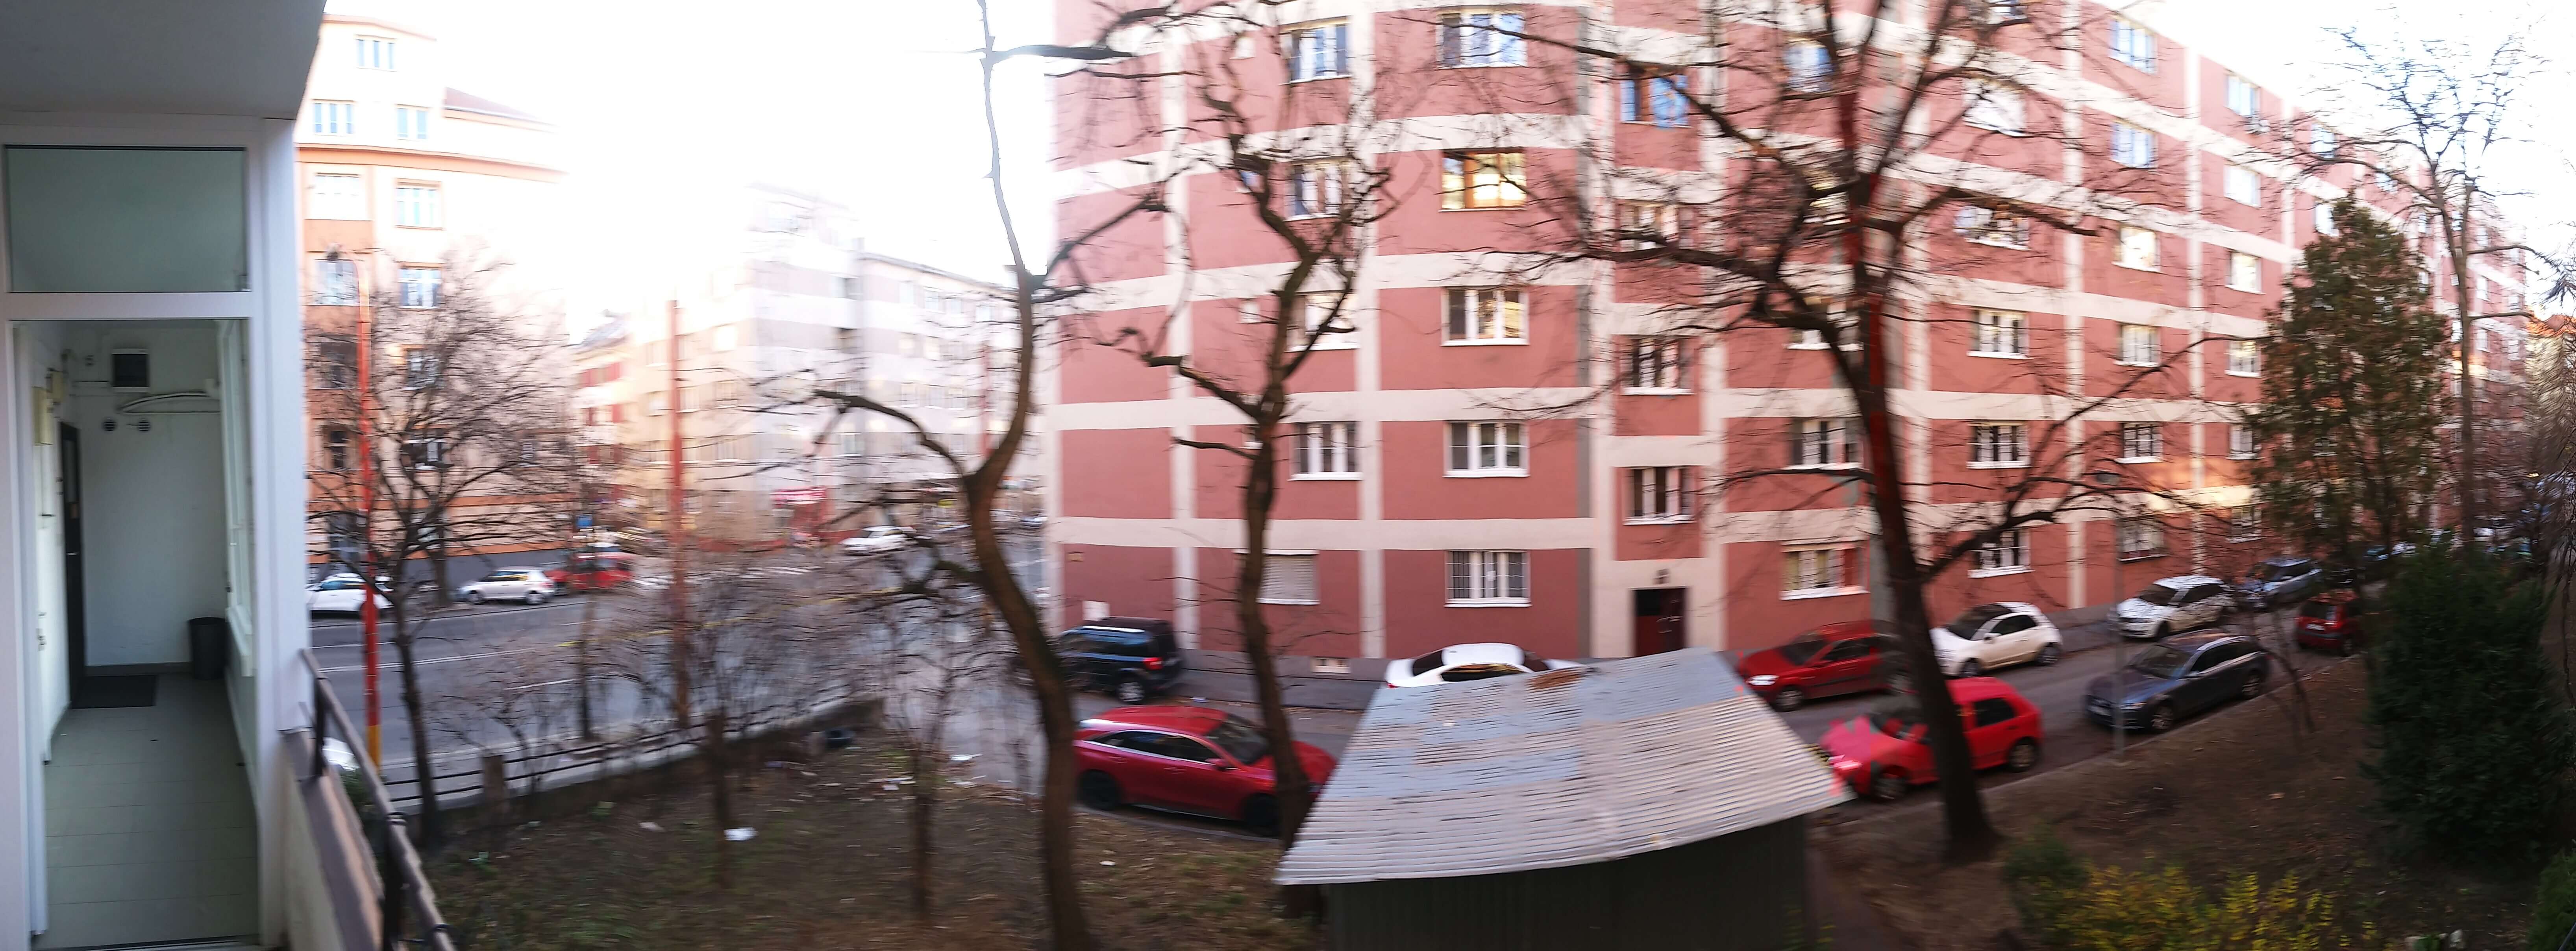 Prenajaté: Prenájom veľkého 2 izbového bytu 80m2, staré mesto, Šancová ulica 37, Bratislava, zariadený-5